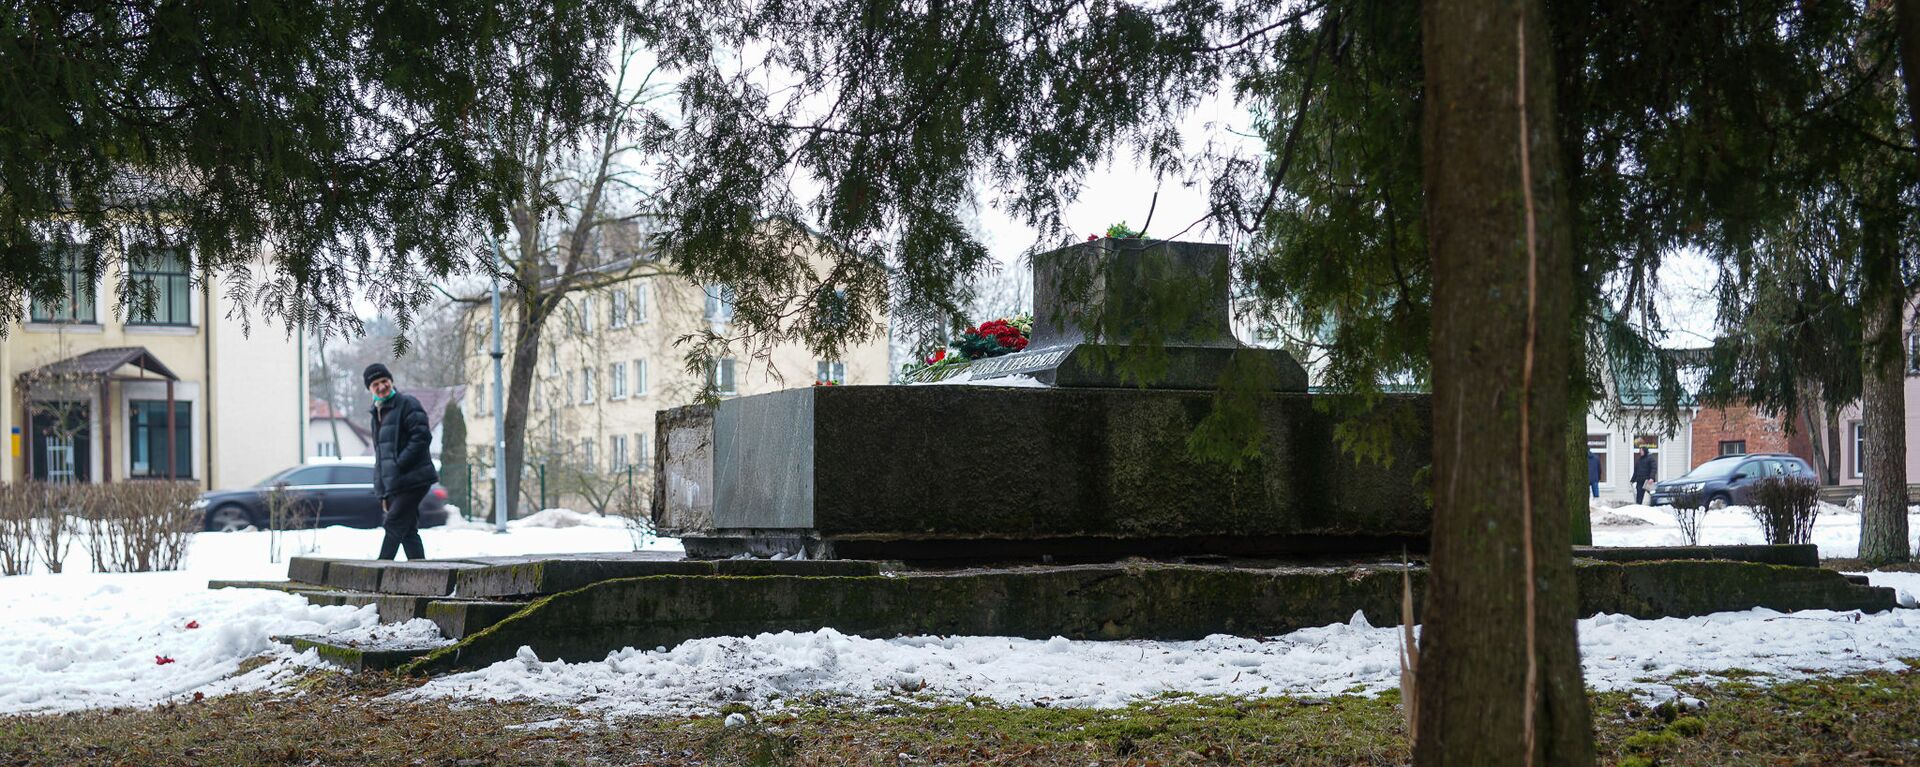 В ночь на 24 февраля в Екабпилсе вандалы украли пушку ЗиС-3 с могилы героев-освободителей Екабпилса от нацистских захватчиков - Sputnik Латвия, 1920, 10.03.2021